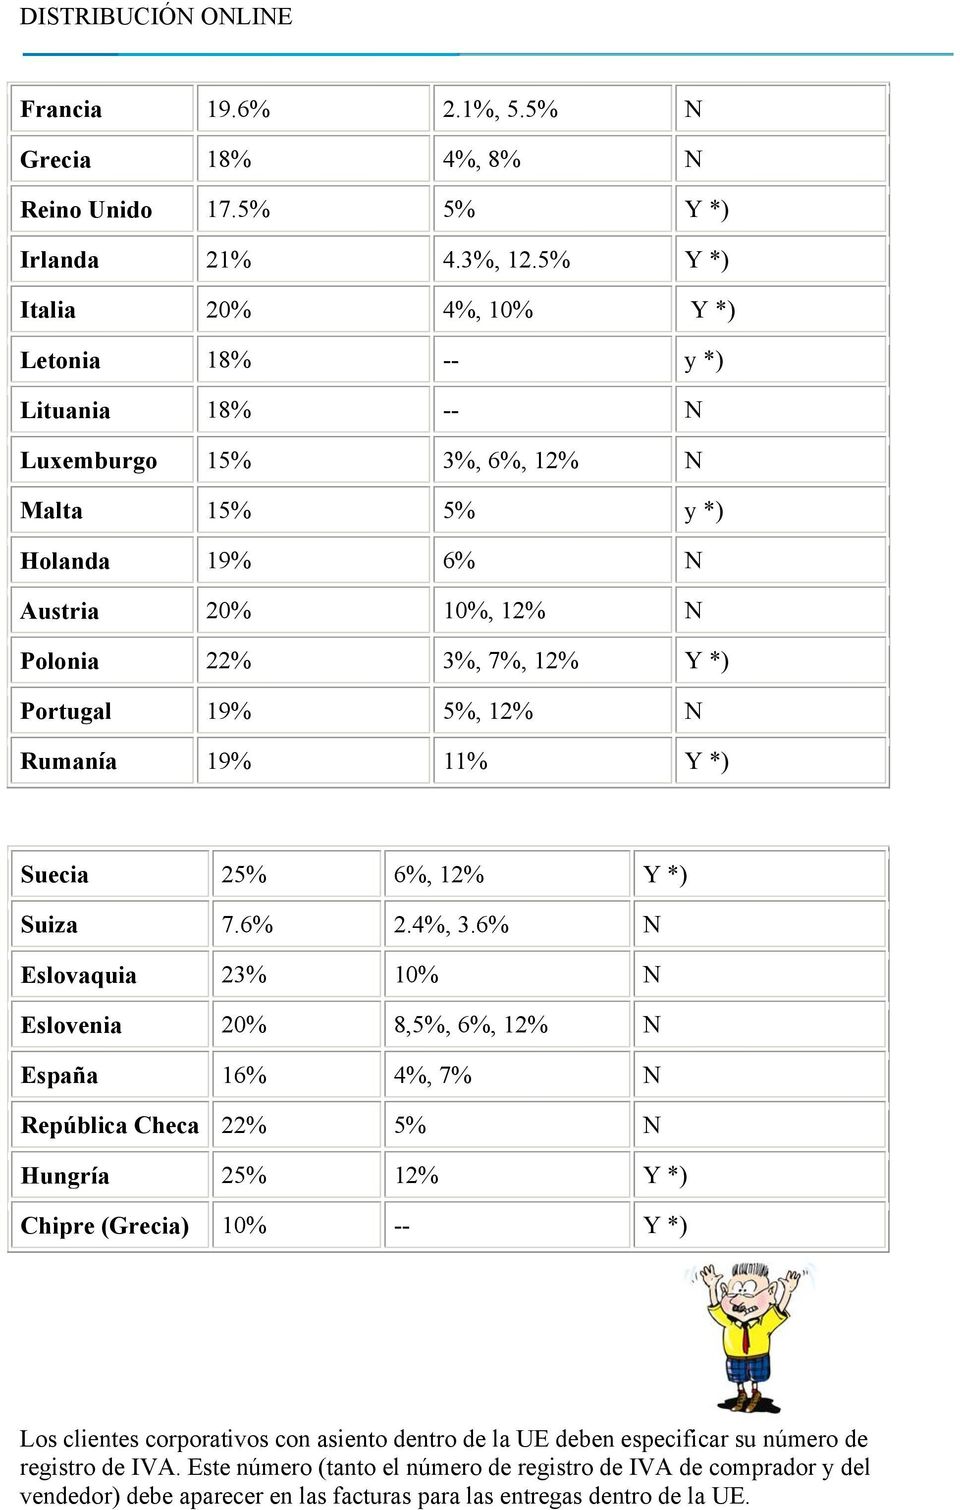 Portugal 19% 5%, 12% N Rumanía 19% 11% Y *) Suecia 25% 6%, 12% Y *) Suiza 7.6% 2.4%, 3.